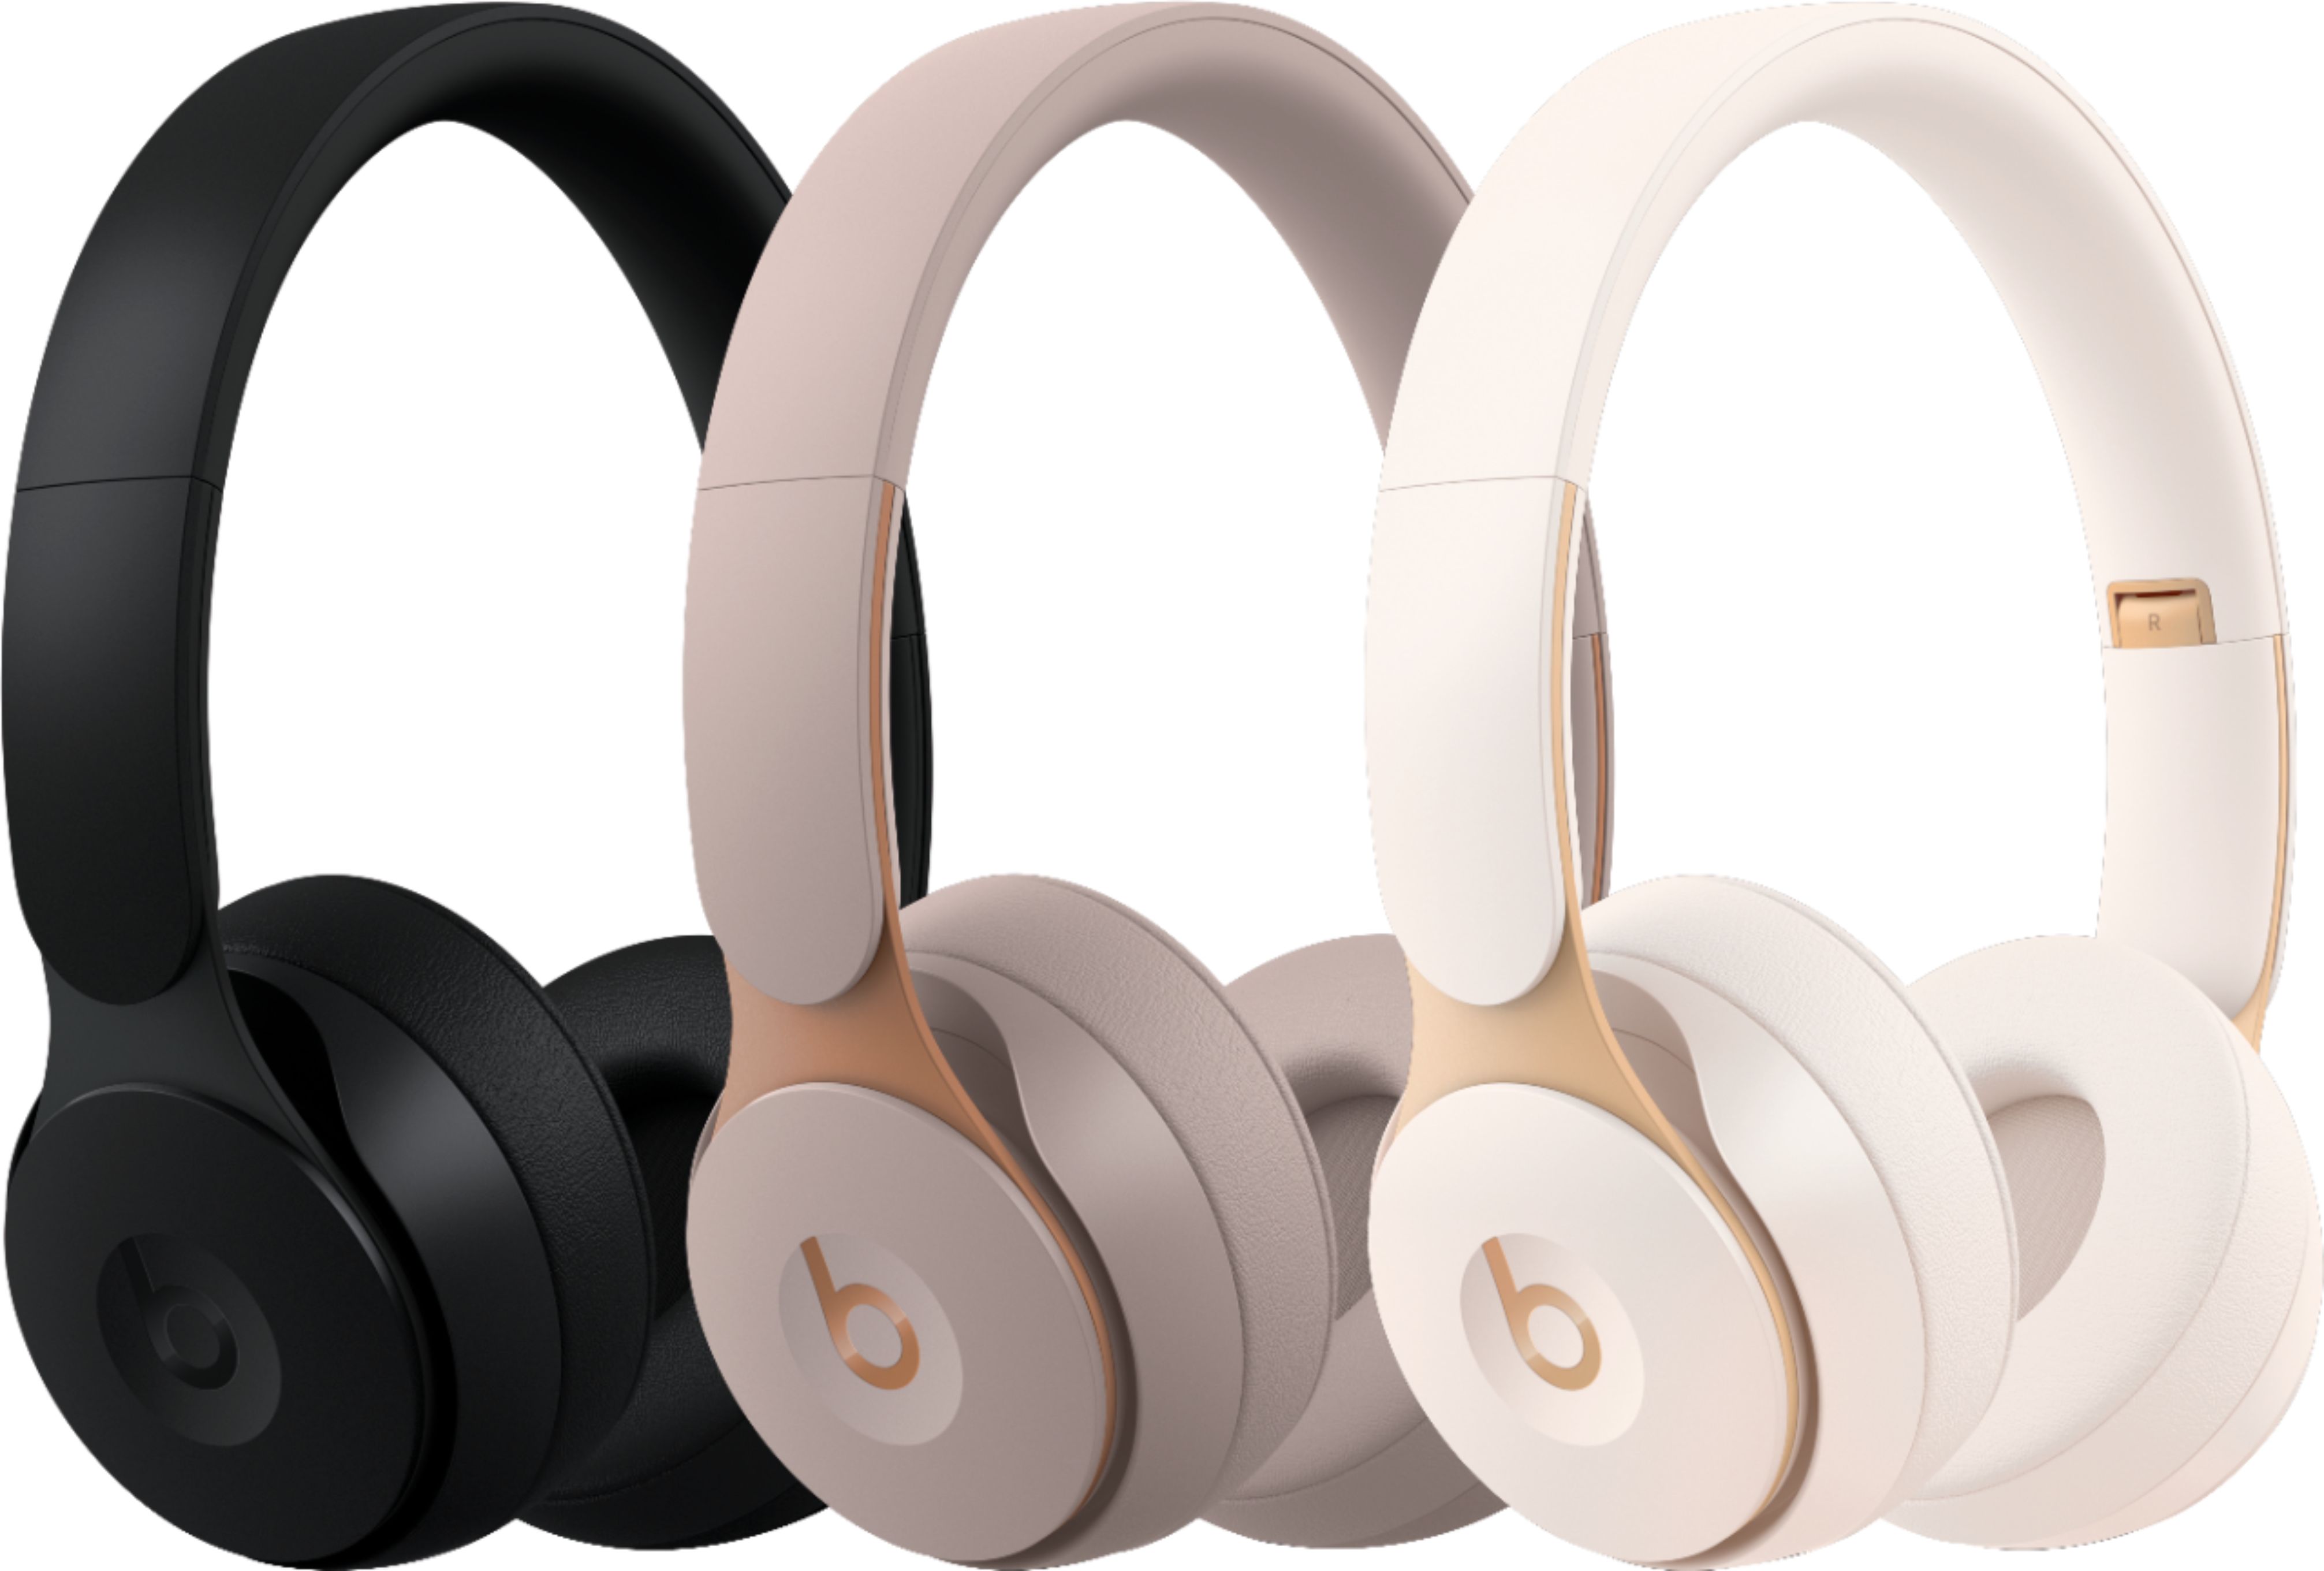 Best Buy: Beats by Dr. Dre Solo Pro Wireless Noise Cancelling On-Ear  Headphones Ivory MRJ82LL/A